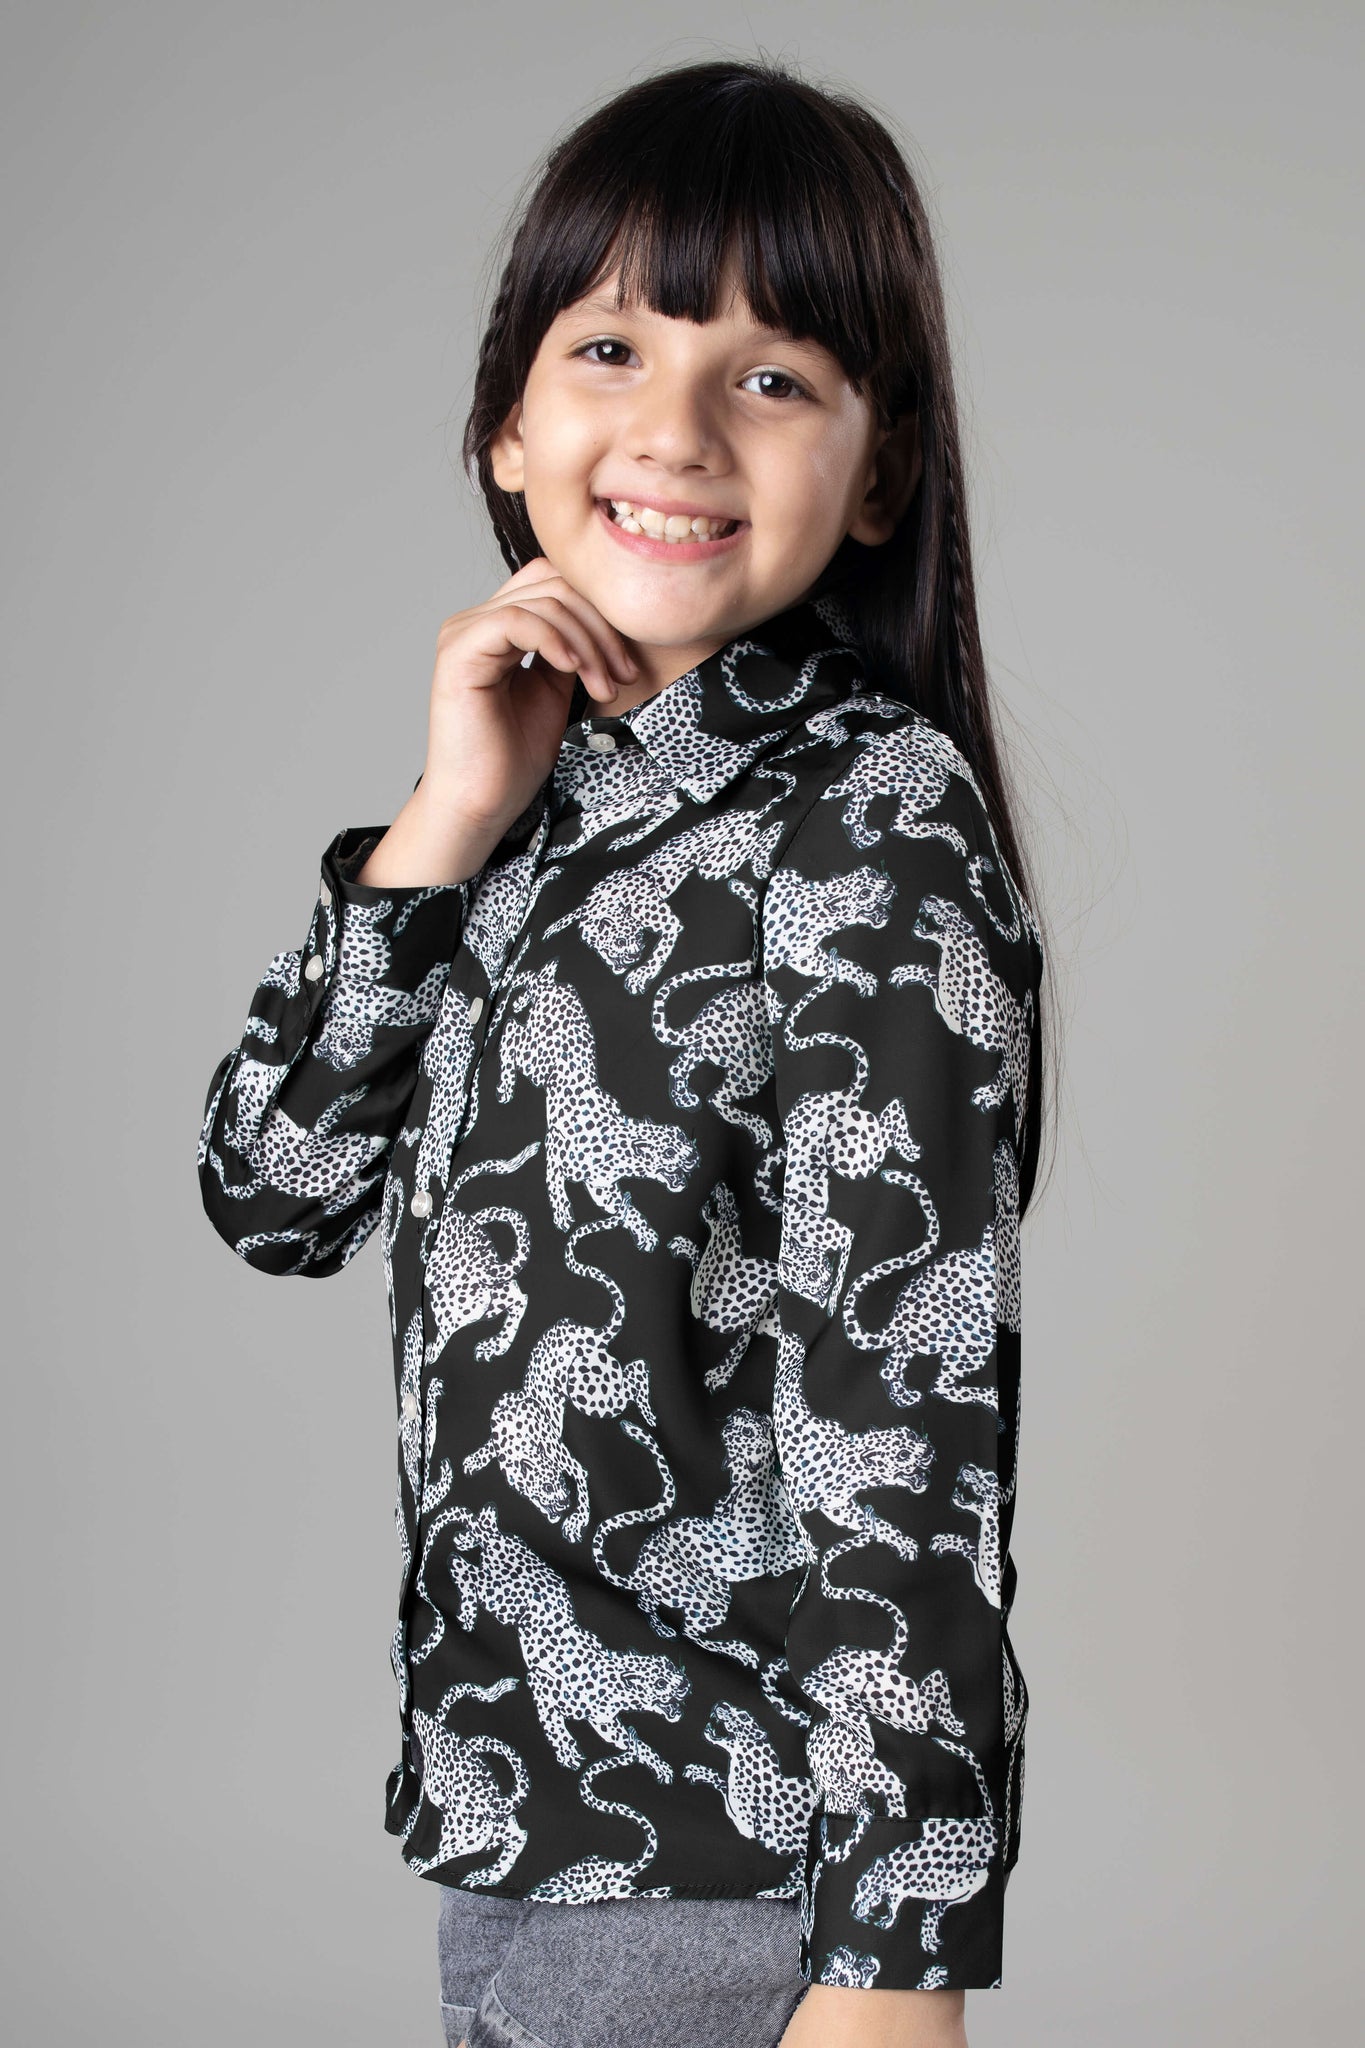 Leopard Print Shirt For Girls